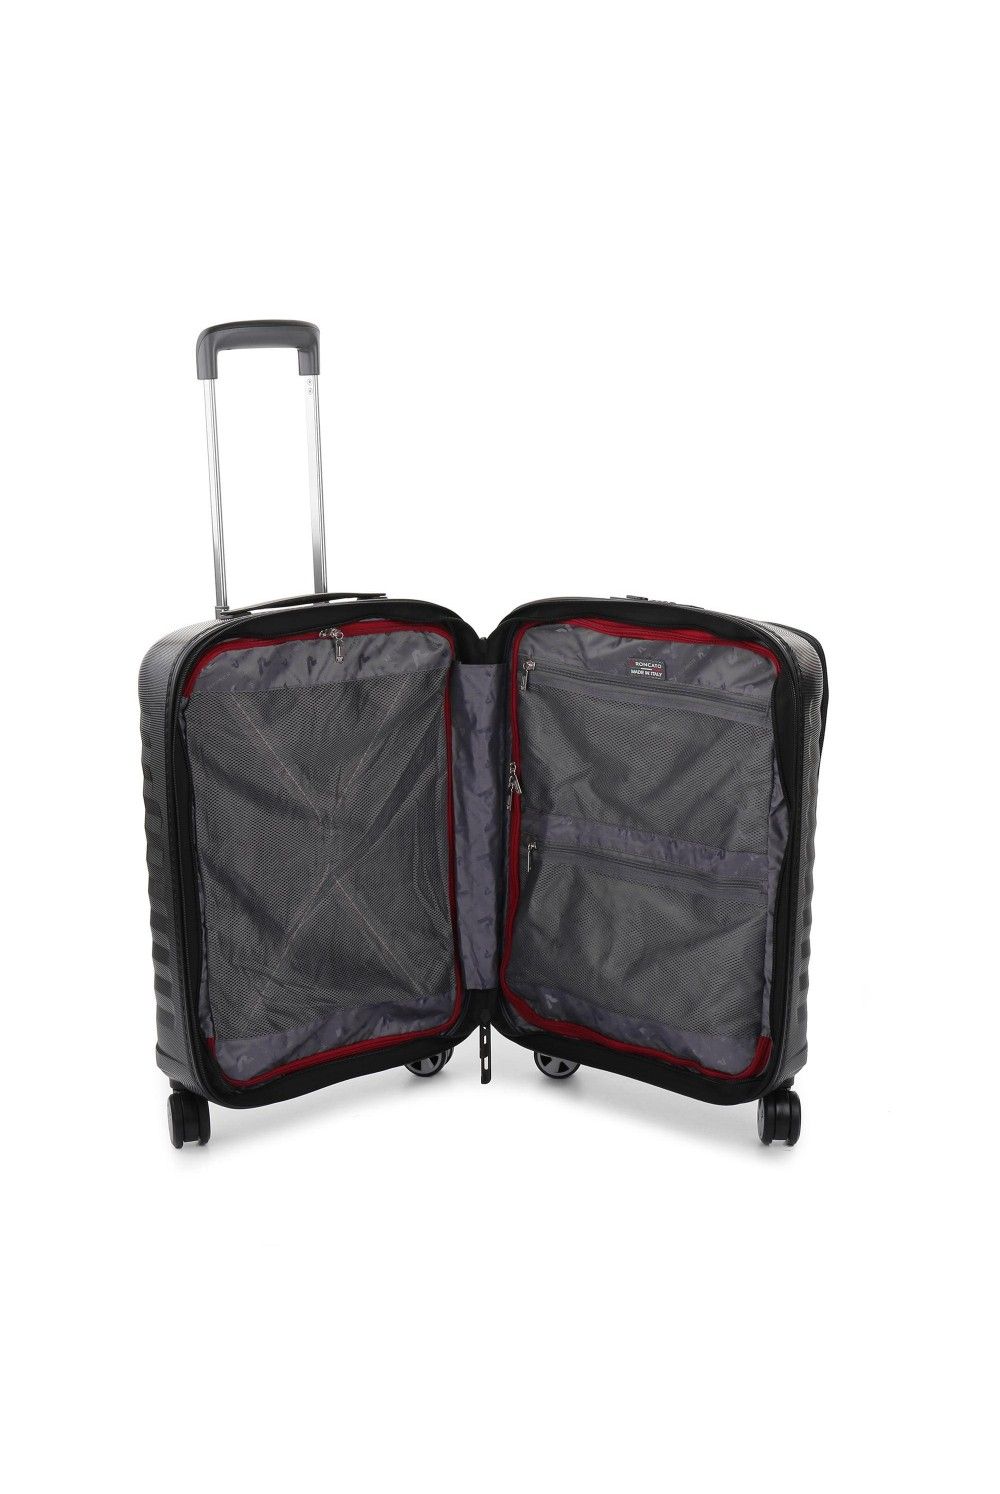 Roncato hand luggage D-Premium 55x40x20/23 expandable black